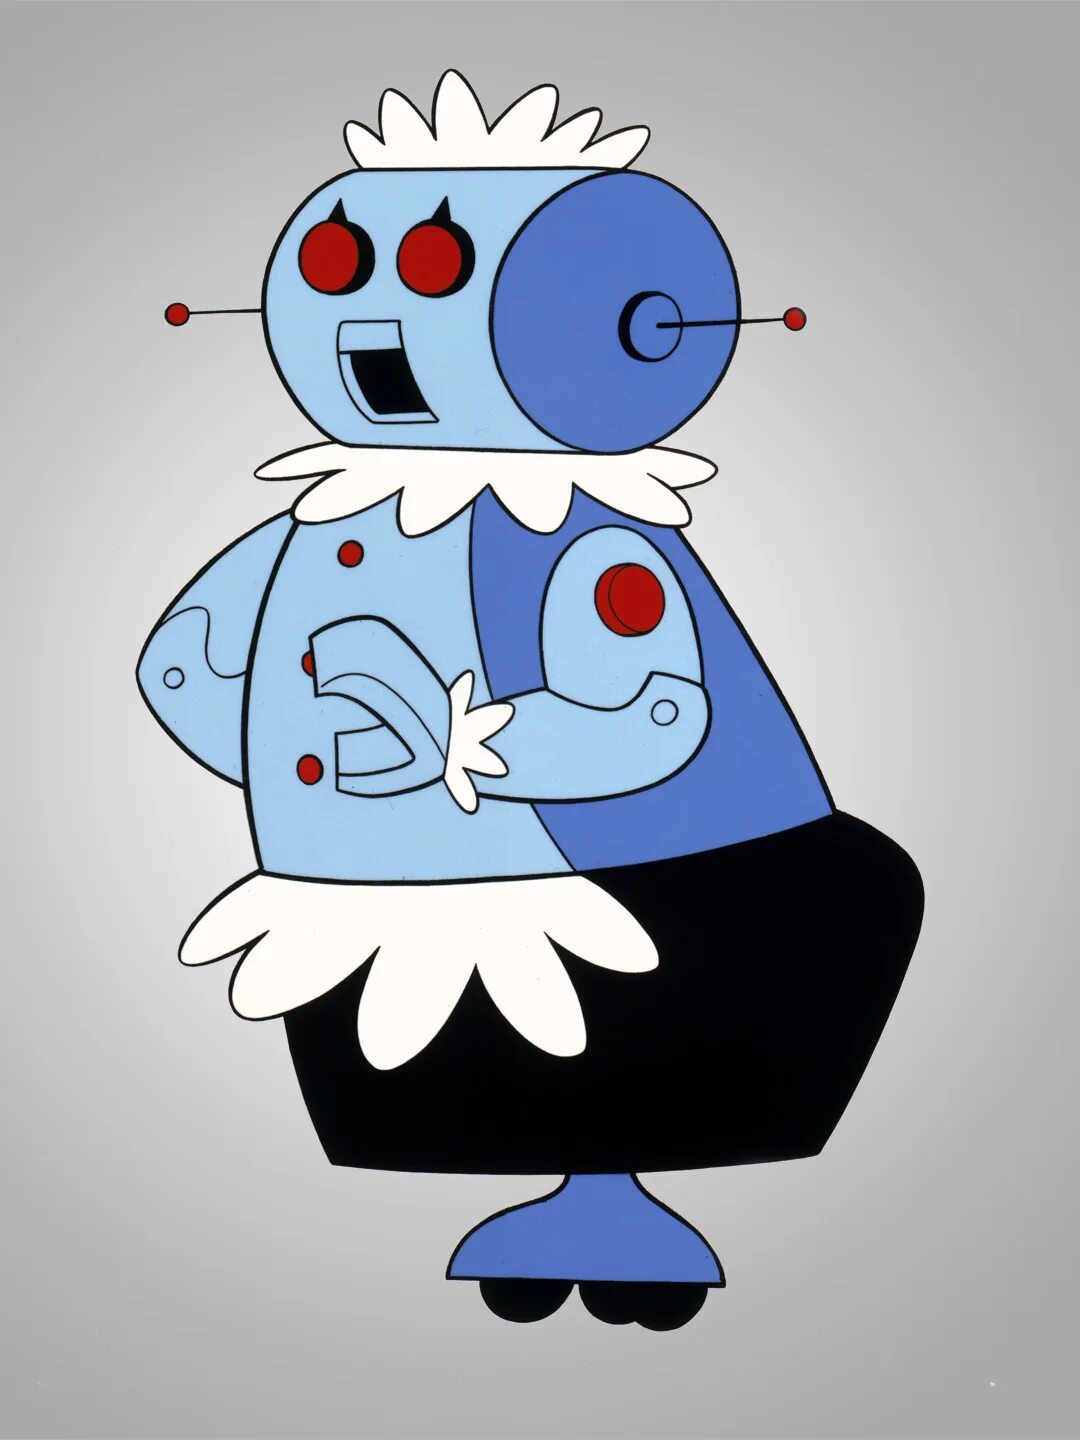 Robot maid. Джетсоны робот. Rosie the Robot. Робот горничная из Джетсонов.